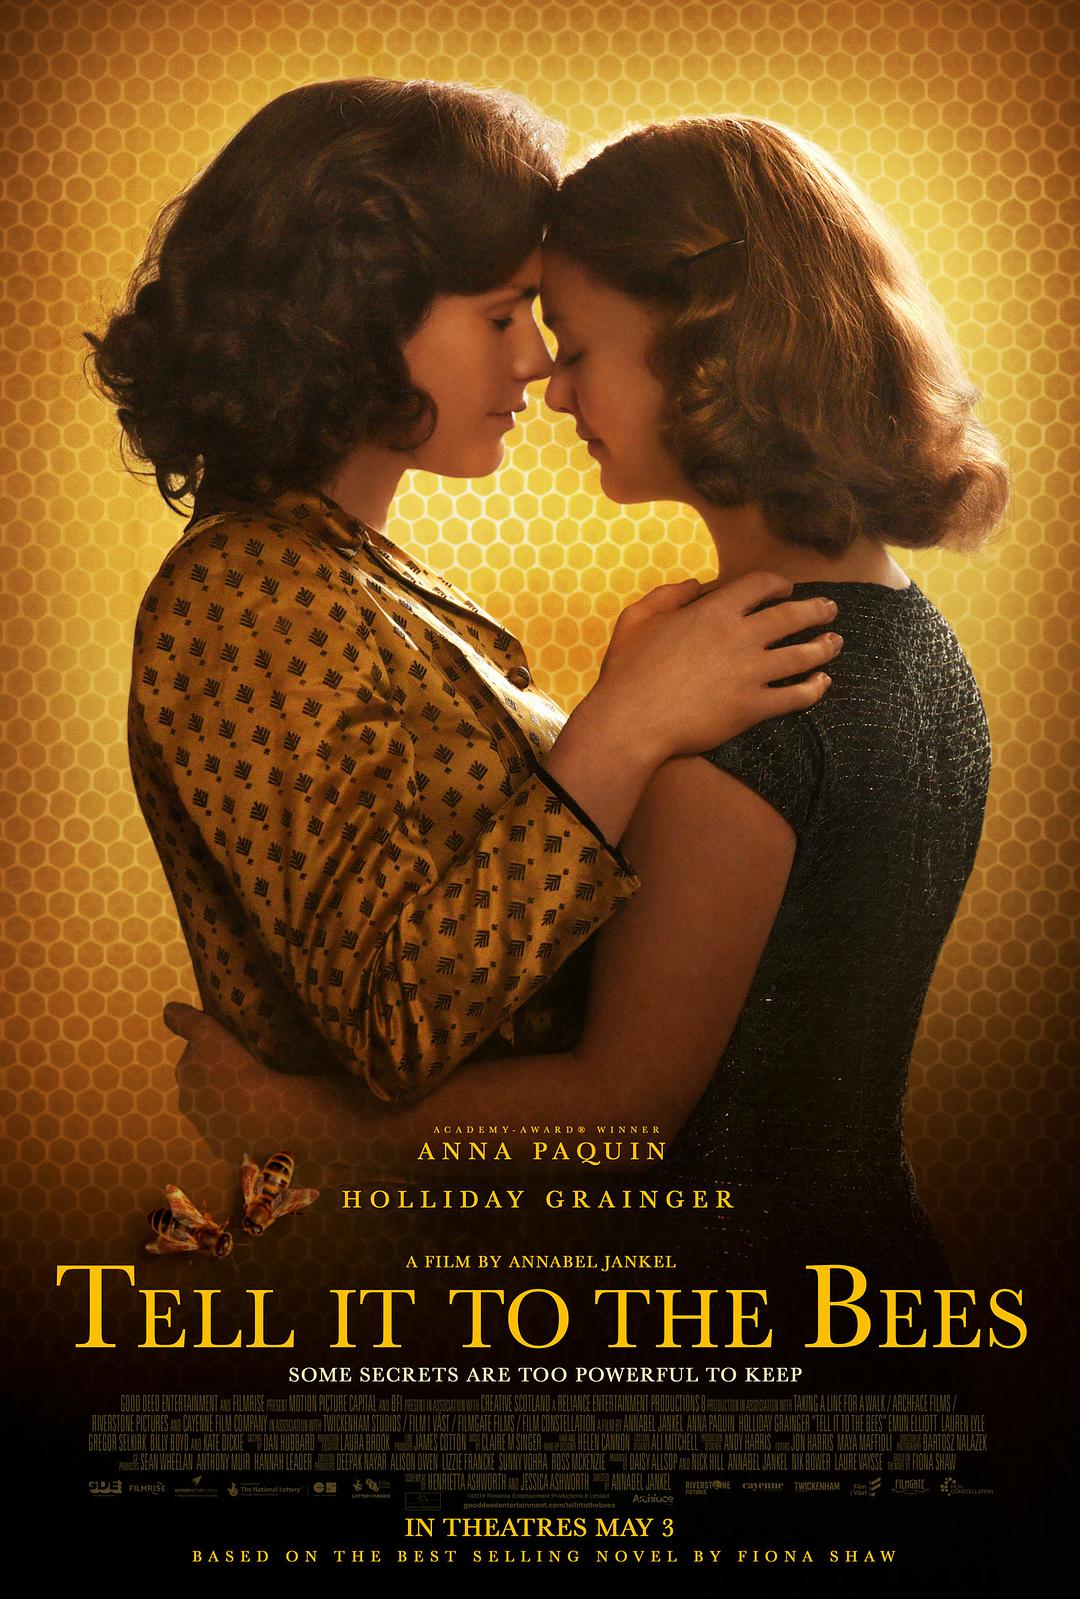 告诉蜜蜂/蜜?密 Tell.It.to.the.Bees.2018.1080p.BluRay.REMUX.AVC.DTS-HD.MA.5.1-FGT 29.02GB-1.png